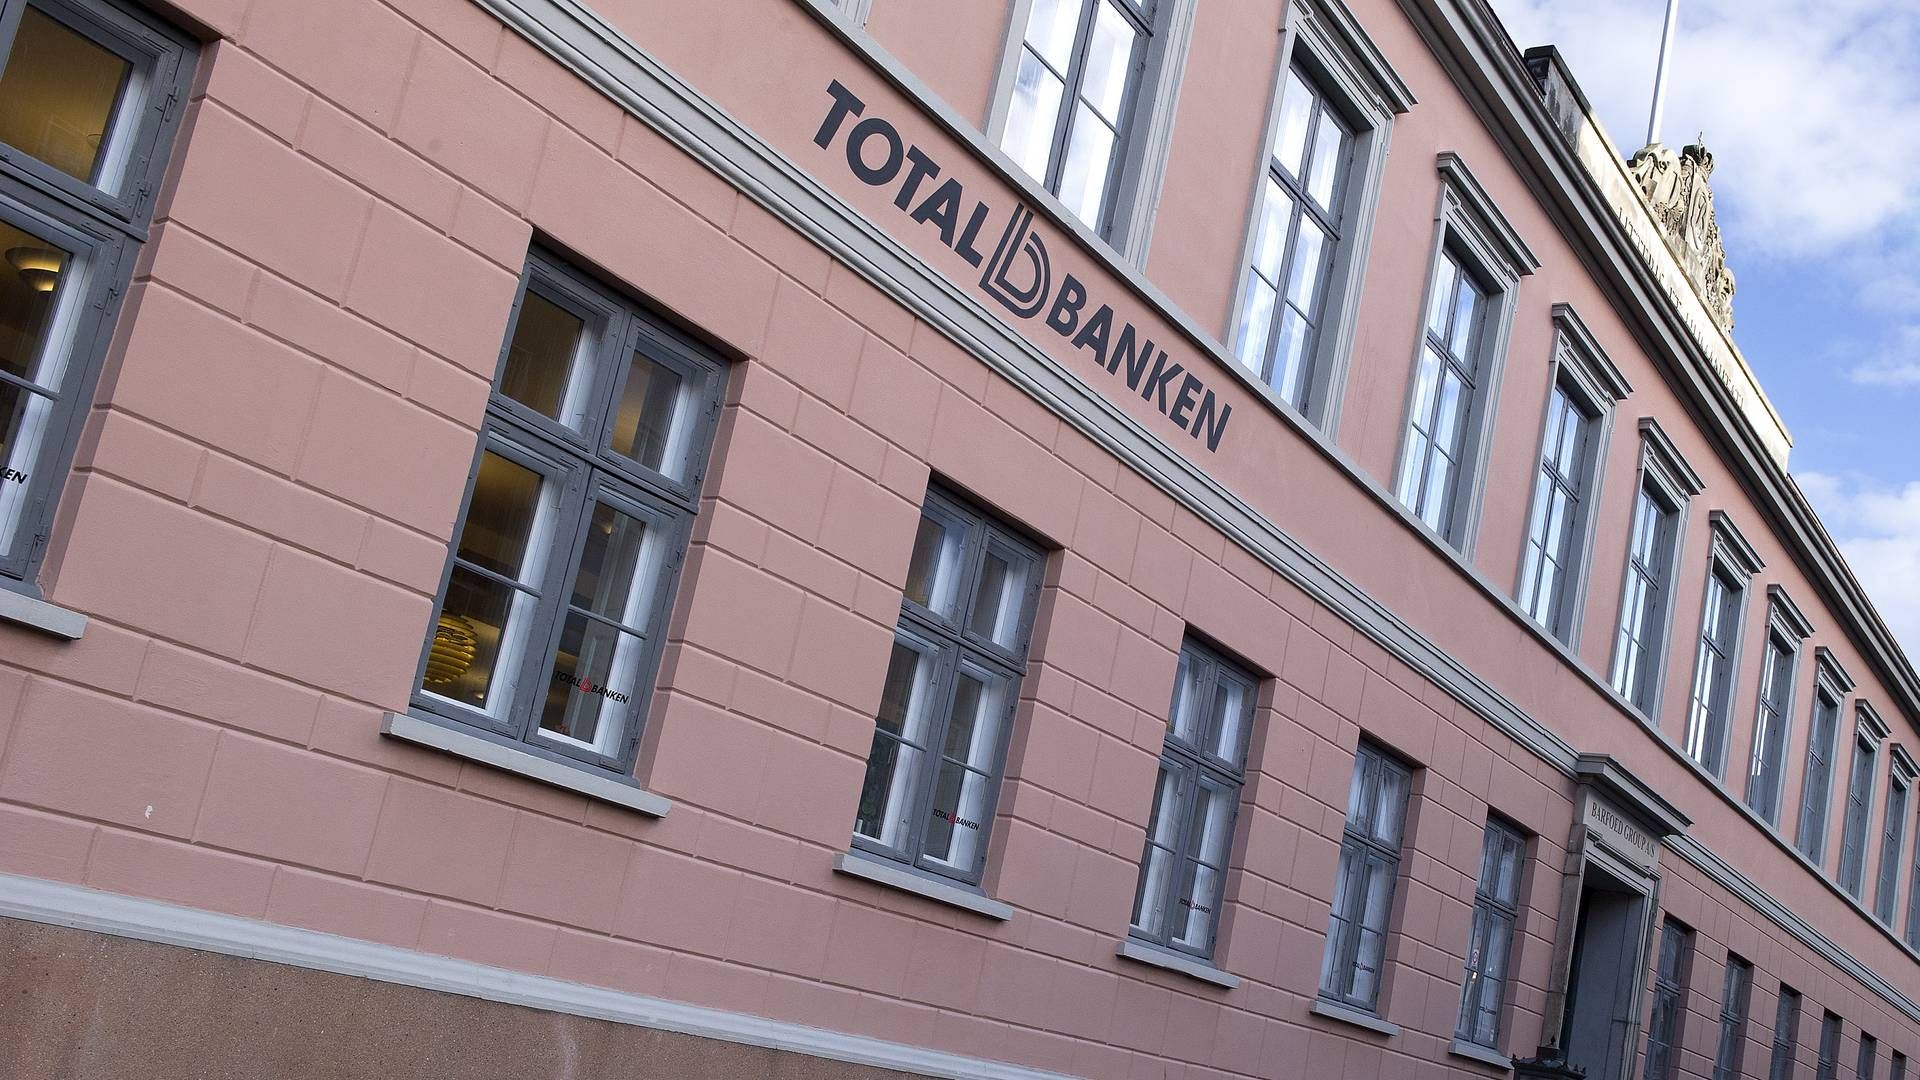 Totalbanken, der er den femtestørste eksponering, gav et afkast på 6,4 mio. kr. | Foto: Carsten Andreasen/ERH